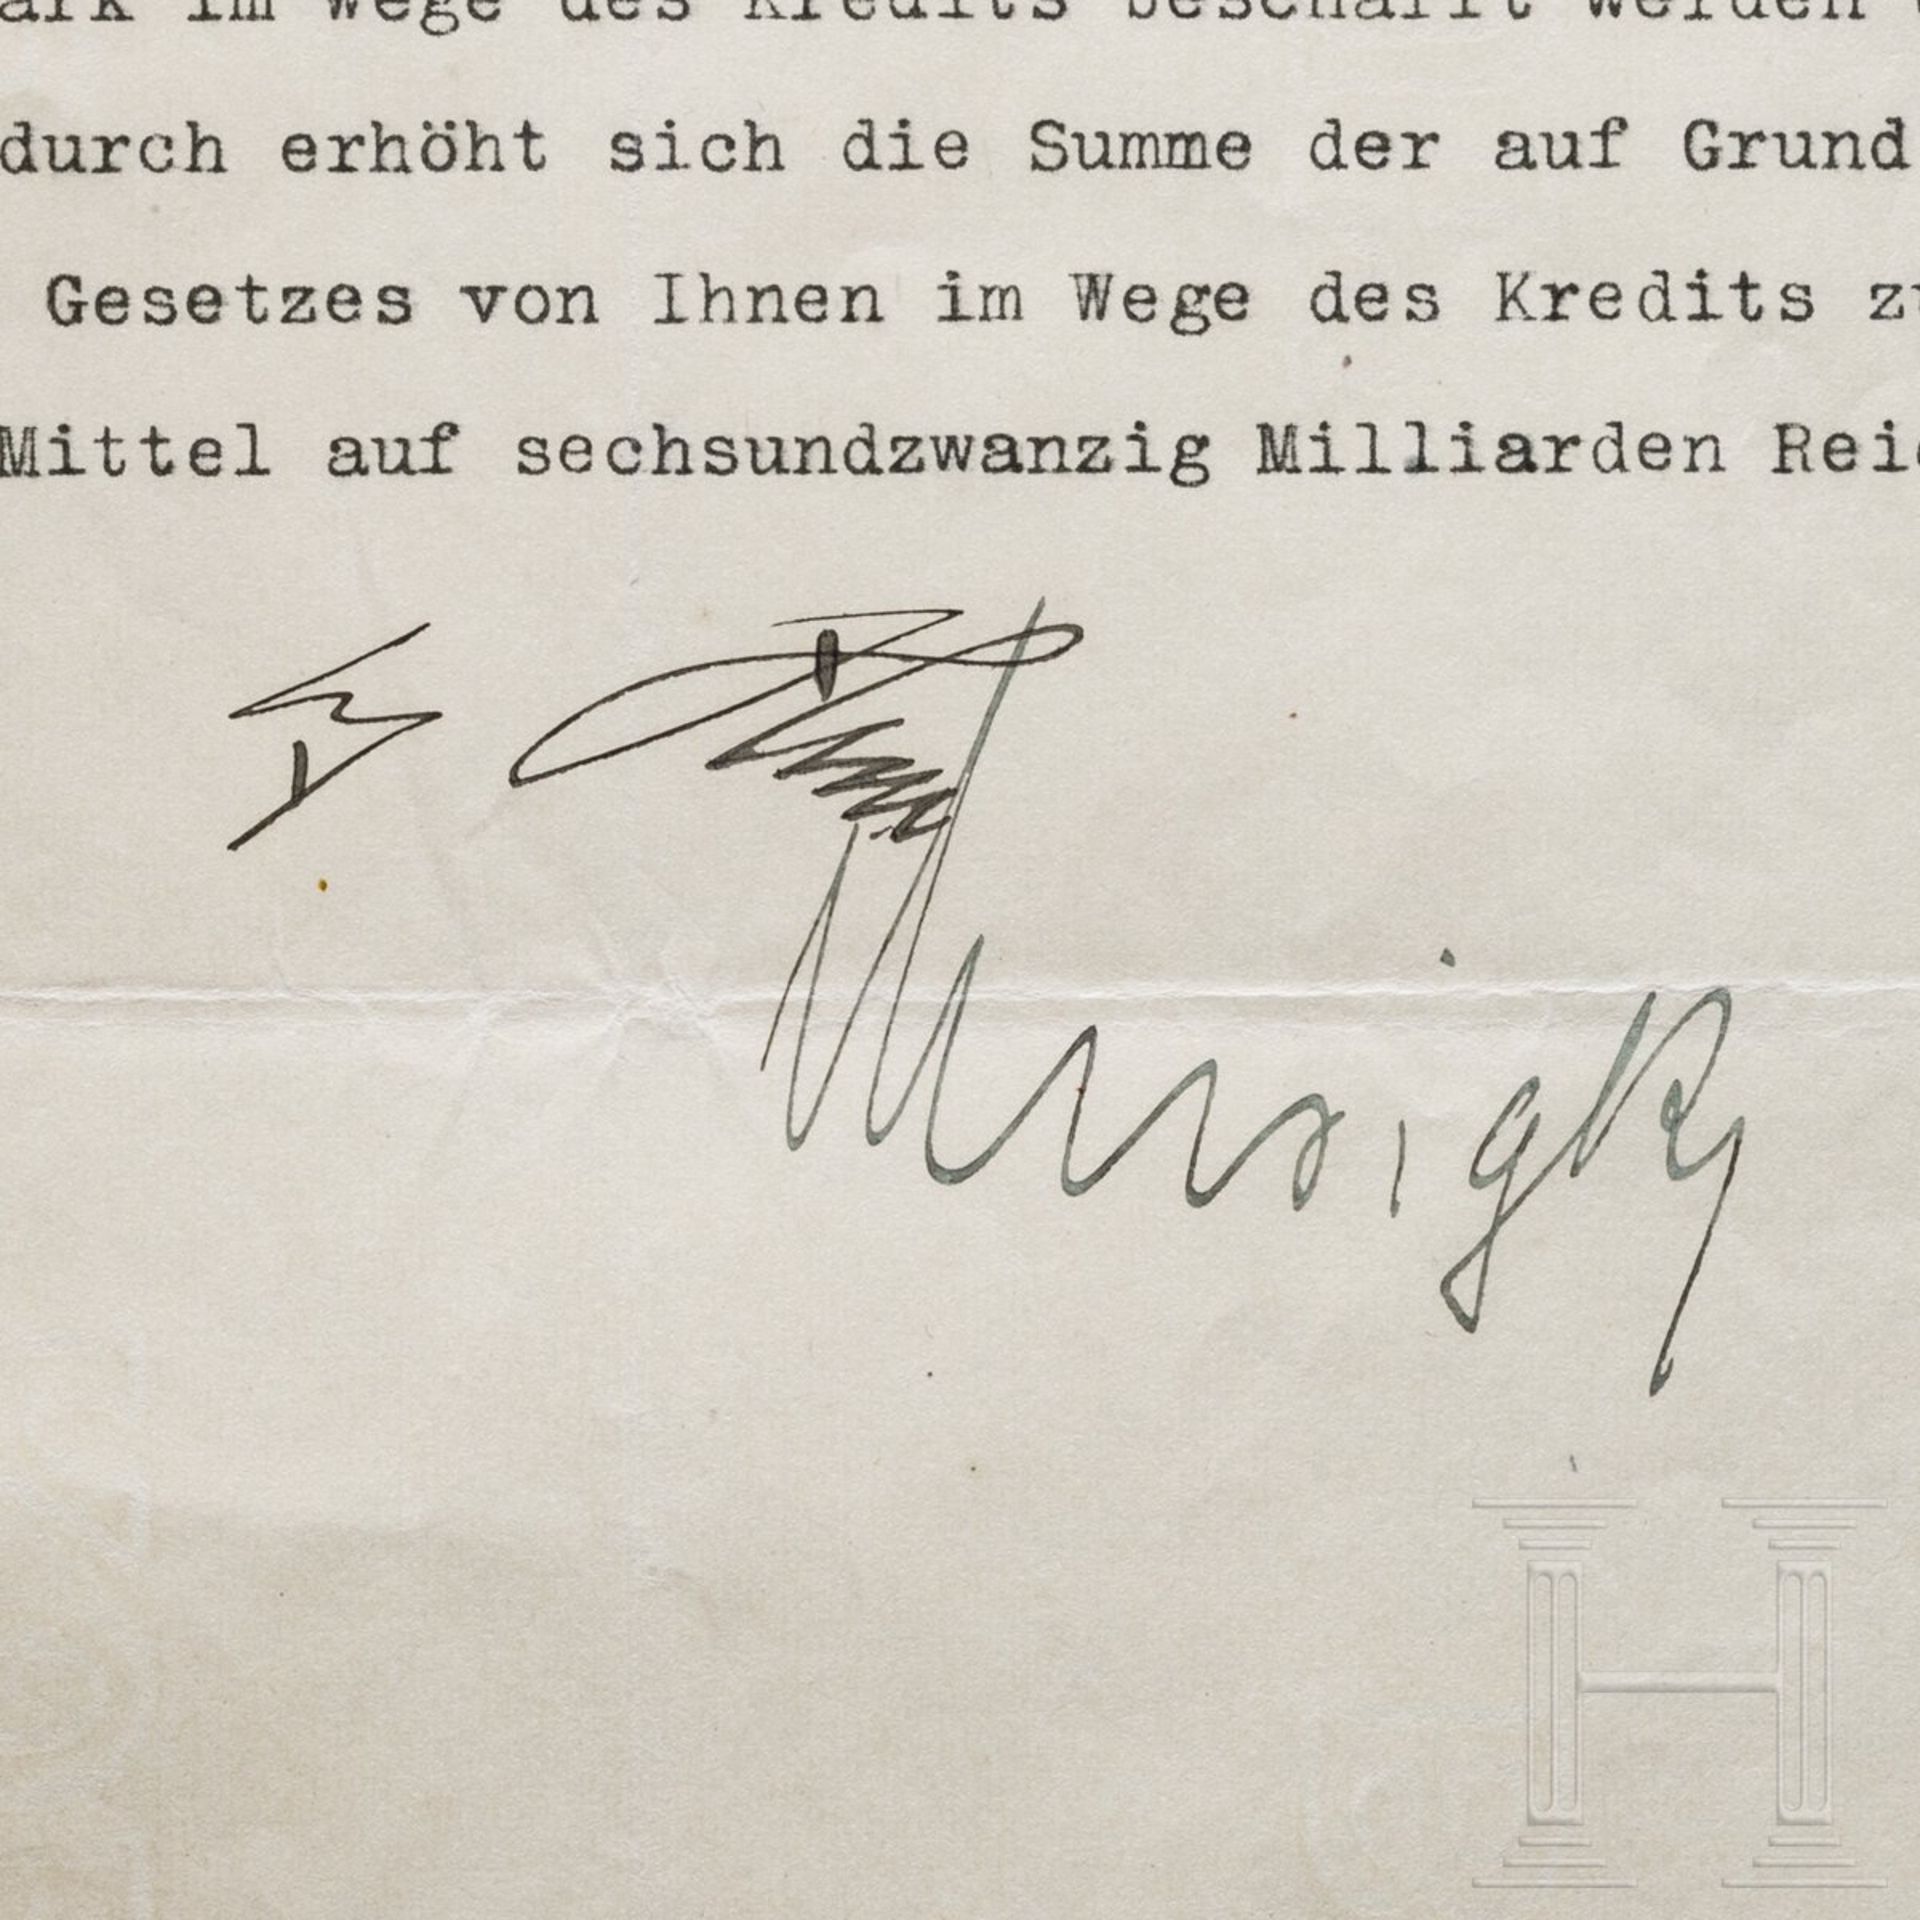 Adolf Hitler - Kreditermächtigung vom 21. Dezember 1938 mit einer Erhöhung von 21 auf 26 Milliarden - Image 3 of 3